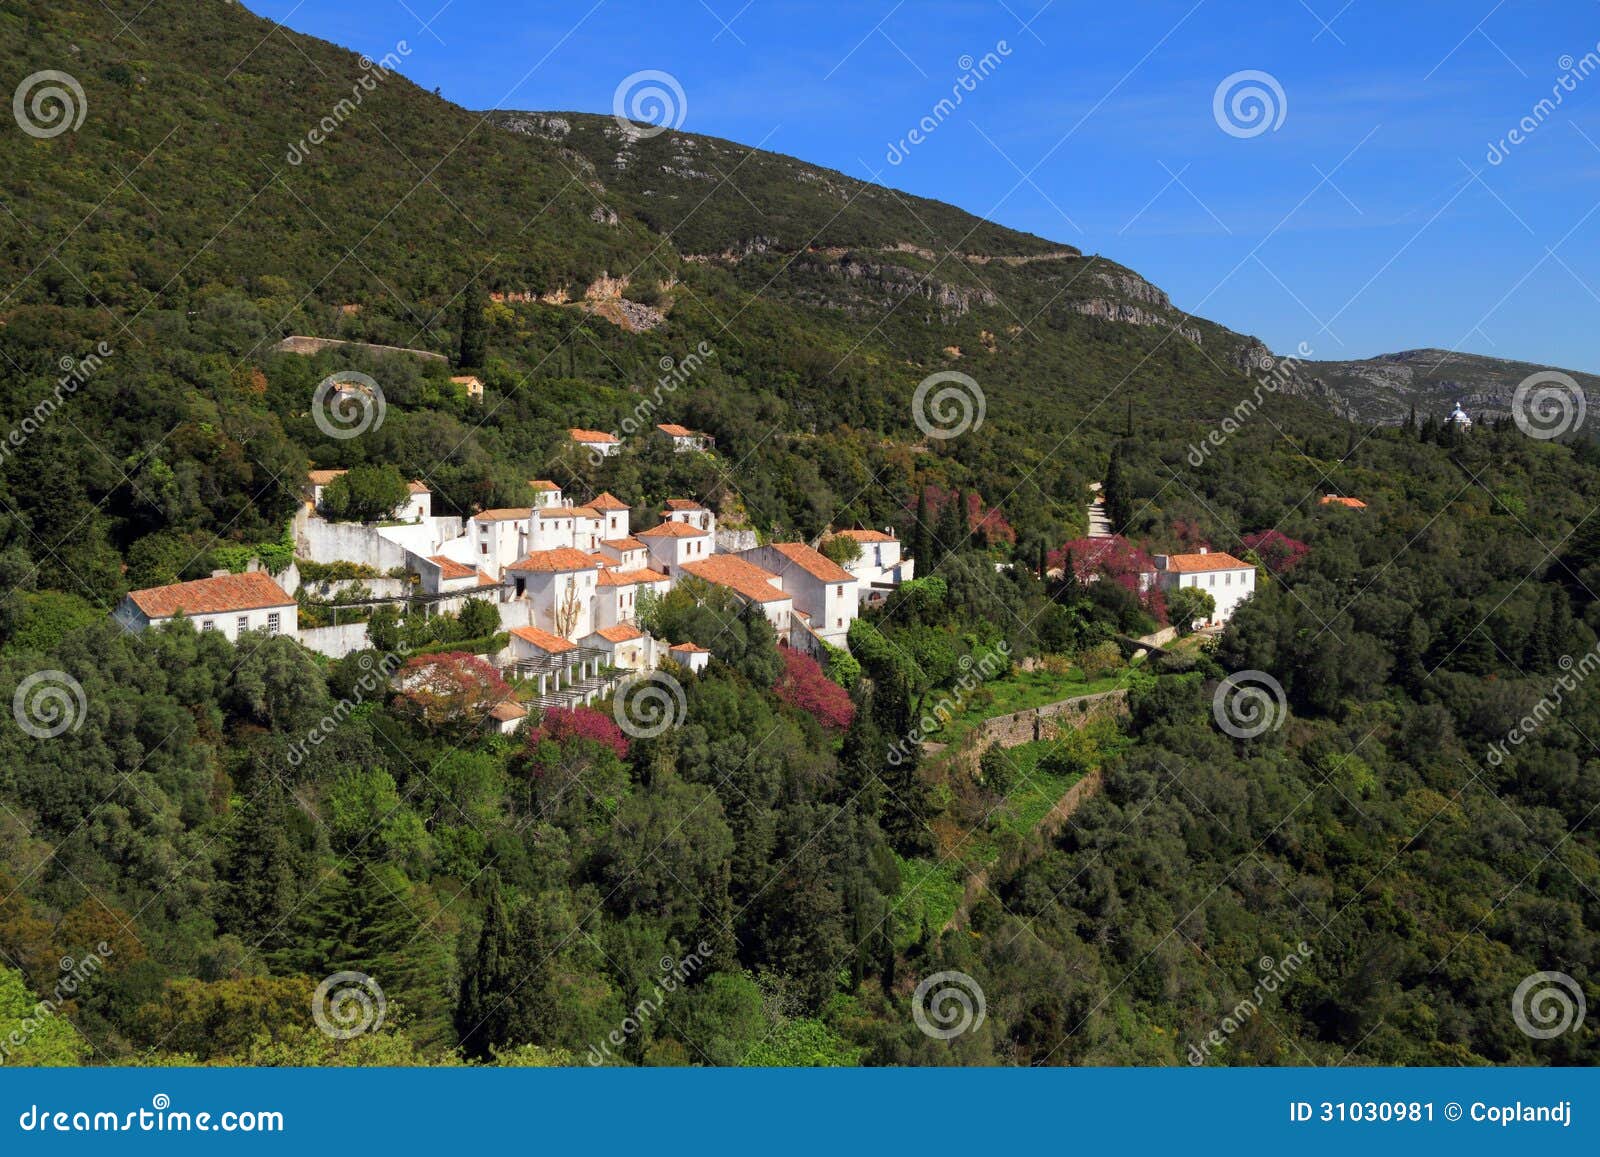 arrabida convent, setubal, portugal